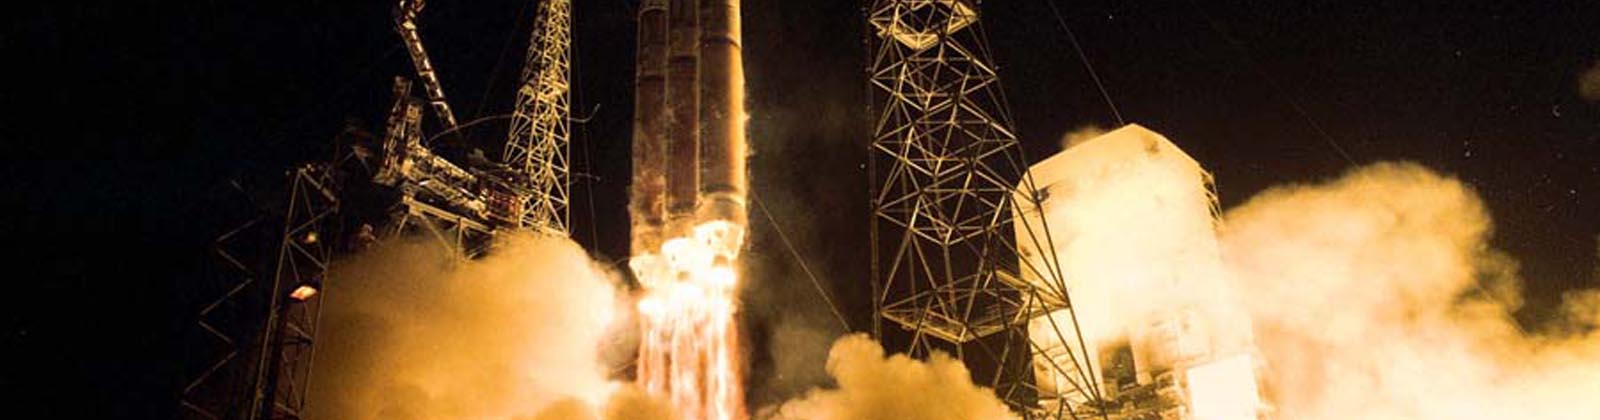 Lancement du satellite NROL-26 par une fusée Delta IV